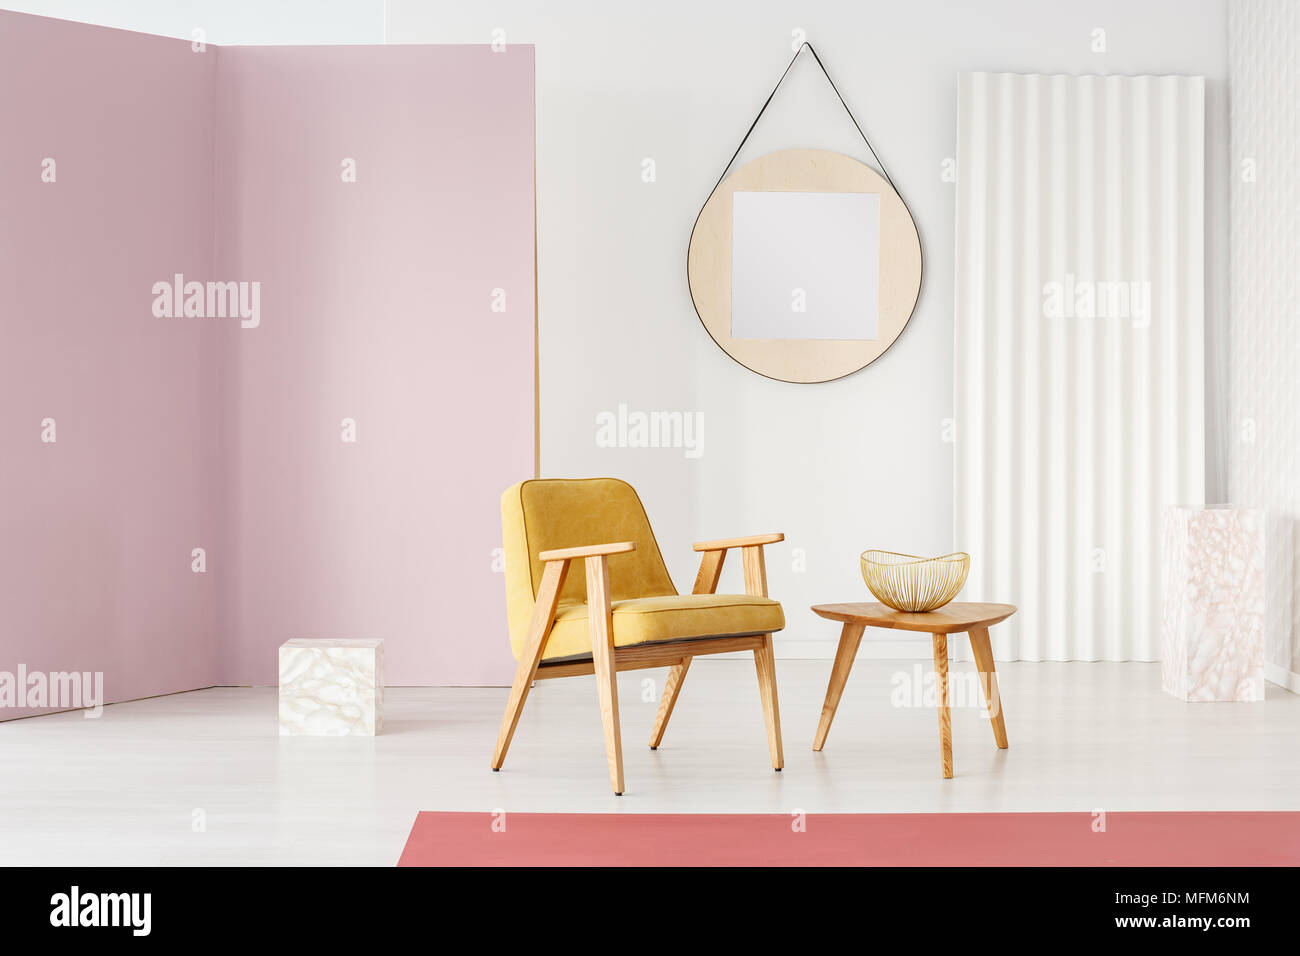 Großer runder Spiegel mit Rahmen aus Holz hängend auf einer weißen Wand  eines minimalistischen Wohnzimmer mit stilvollen Möbeln und Marmor Cubes  Stockfotografie - Alamy